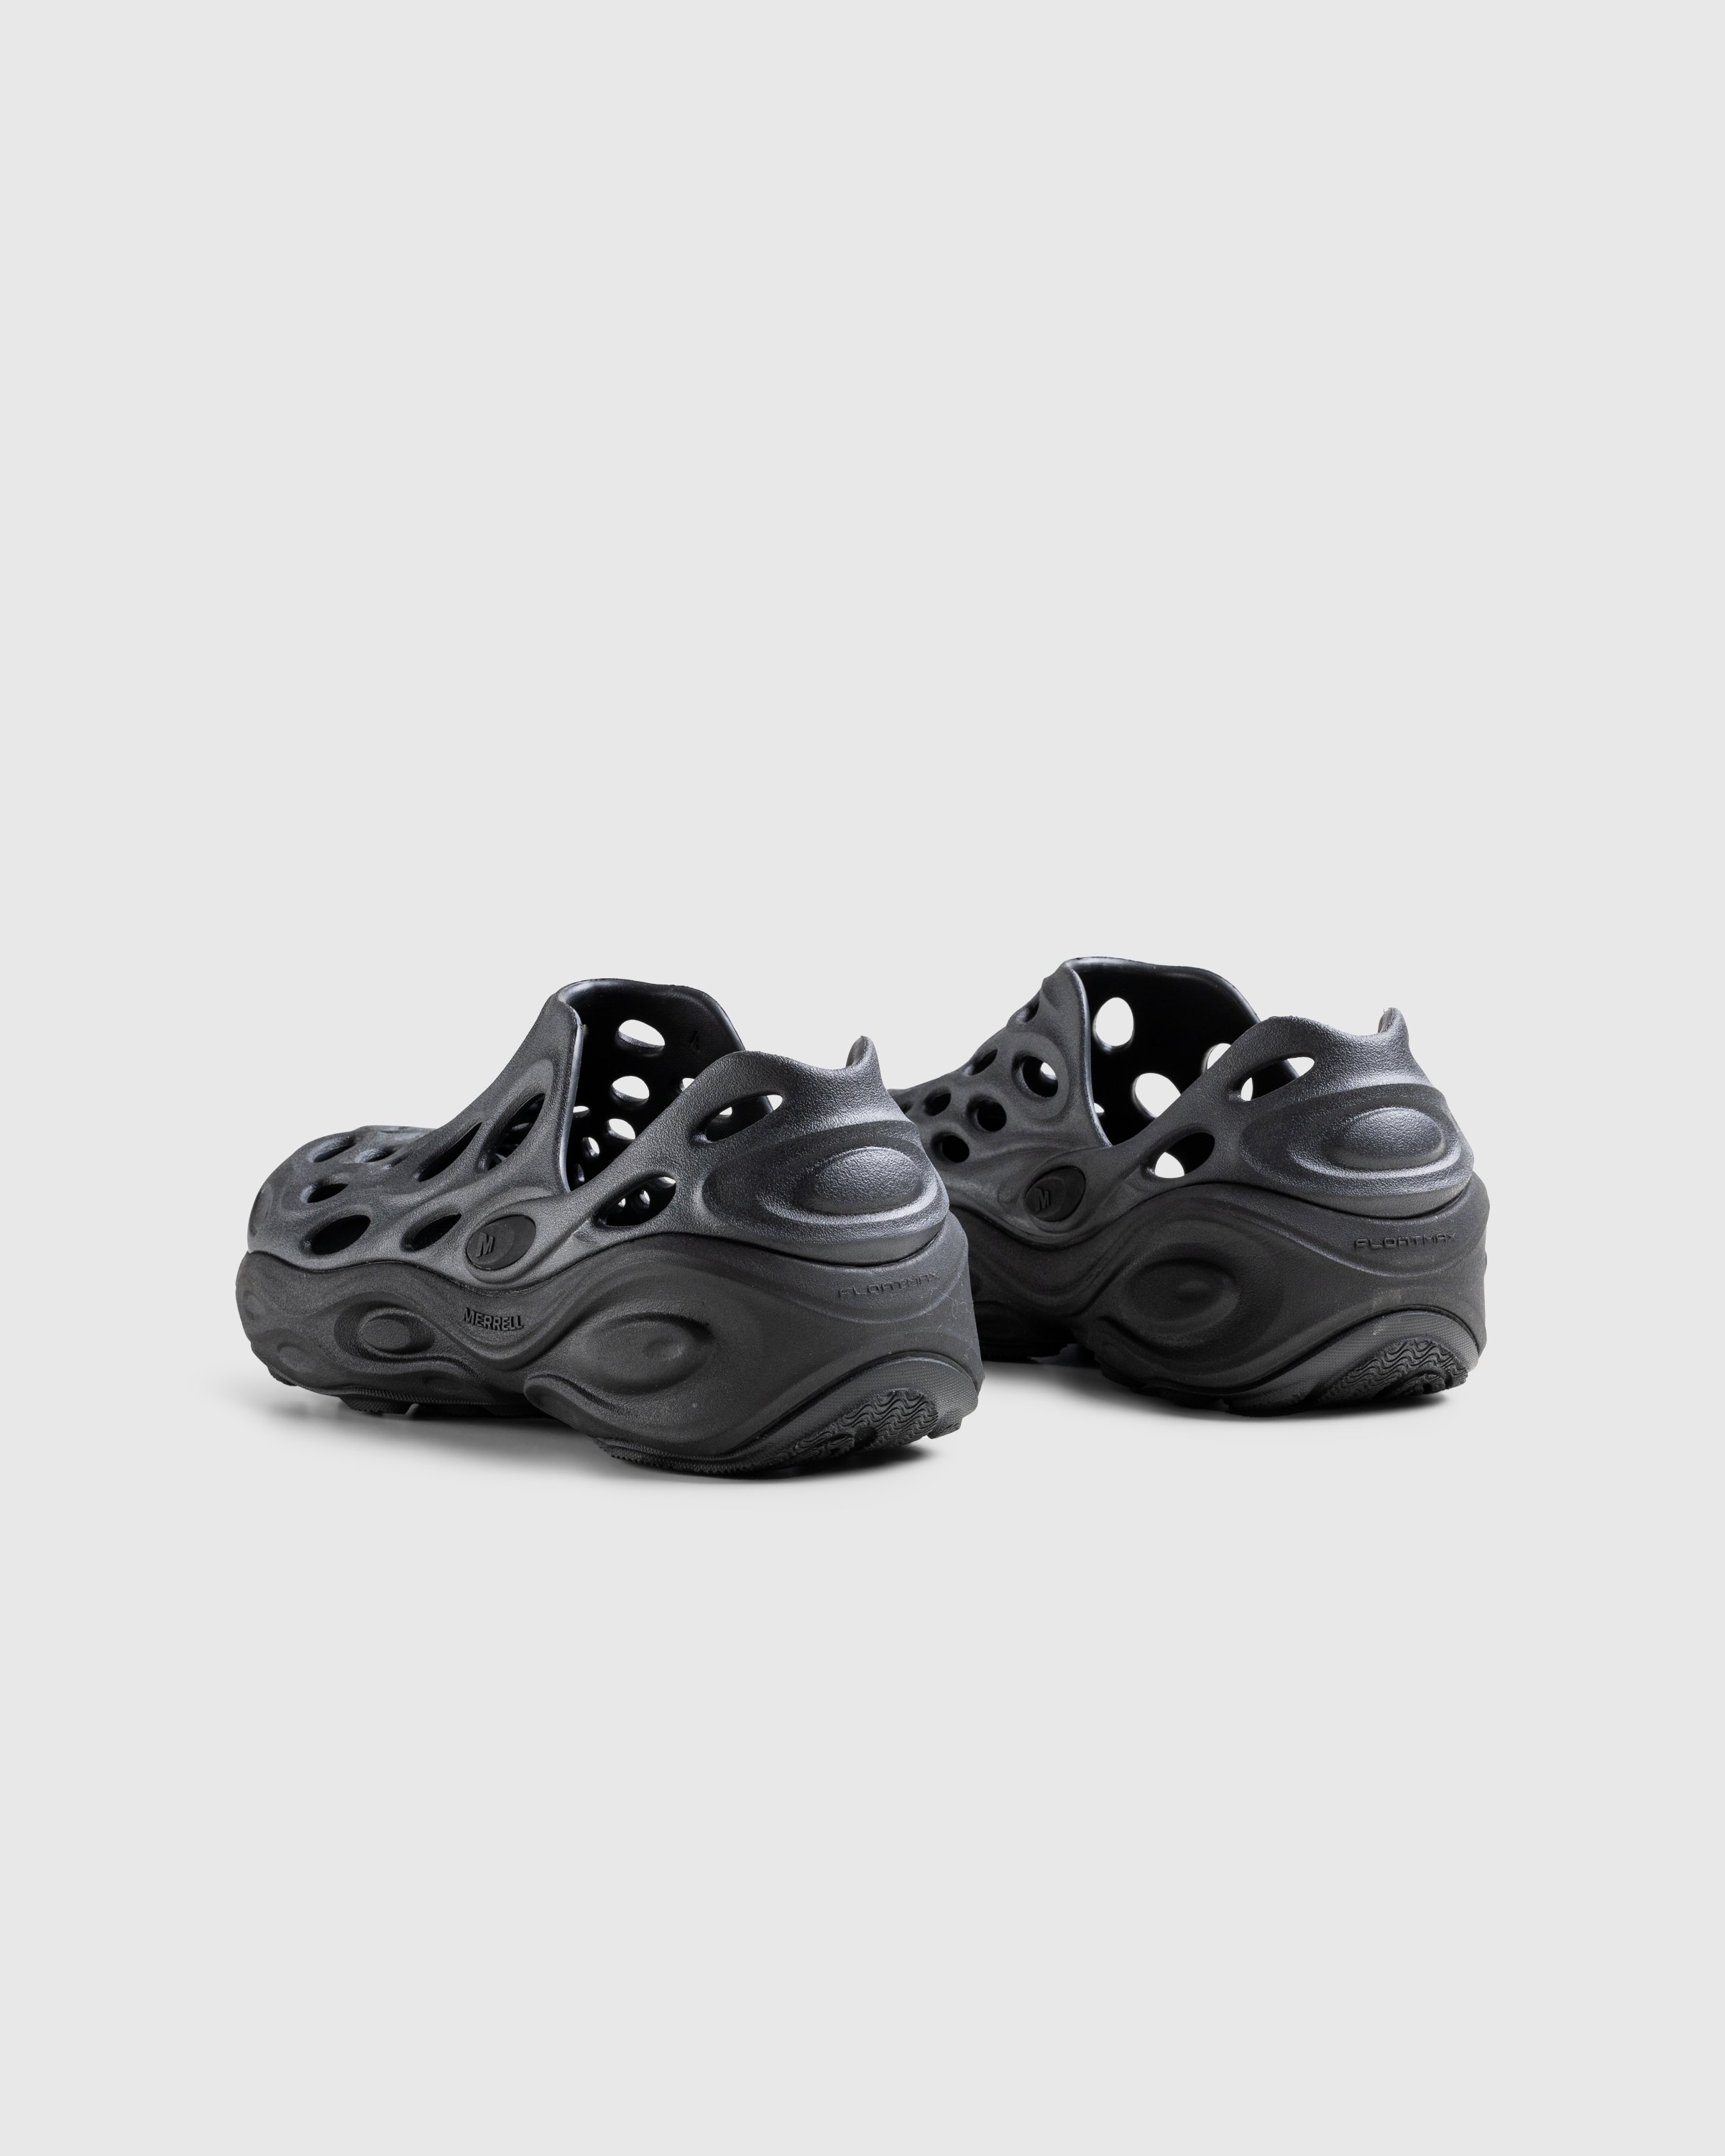 Merrell - HYDRO NEXT GEN MOC SE/TRIPLE BLACK - Footwear - Black - Image 4